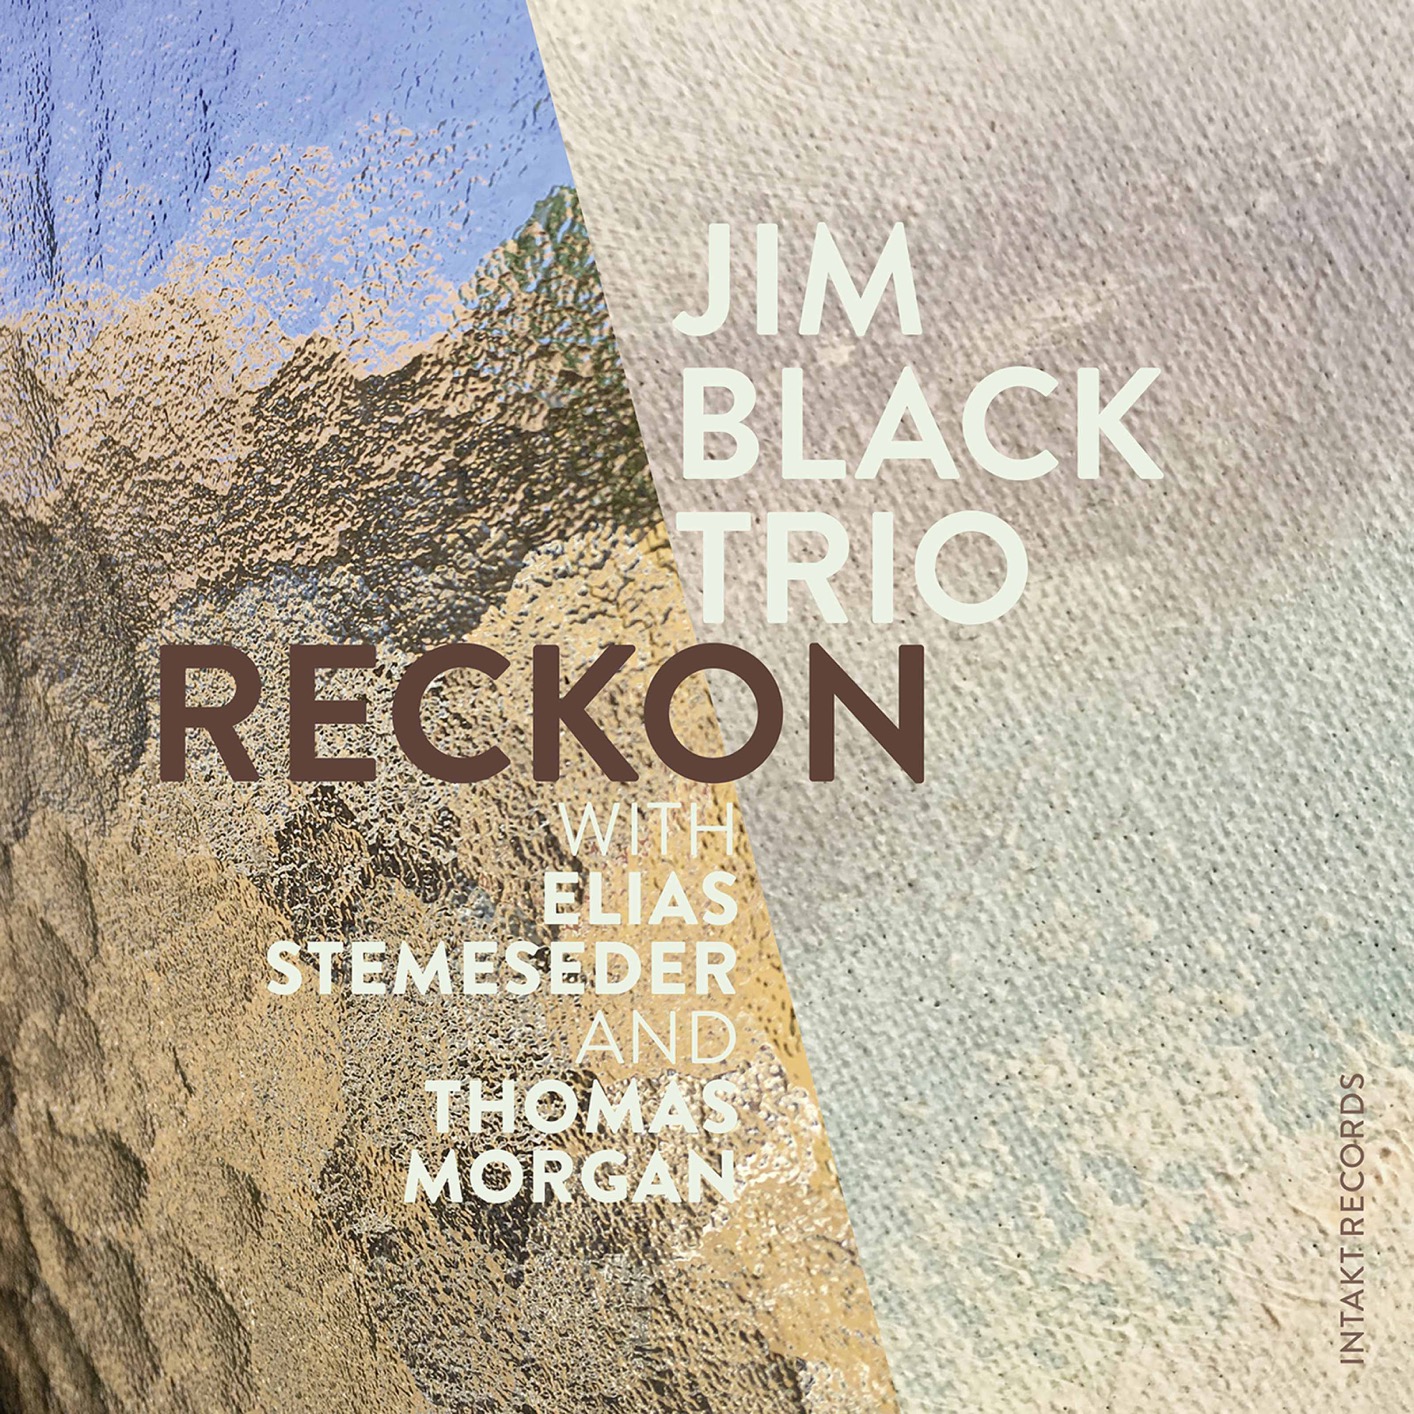 Jim Black Trio with Jim Black, Elias Stemeseder, Thomas Morgan - Reckon (2020) [FLAC 24bit/88,2kHz]